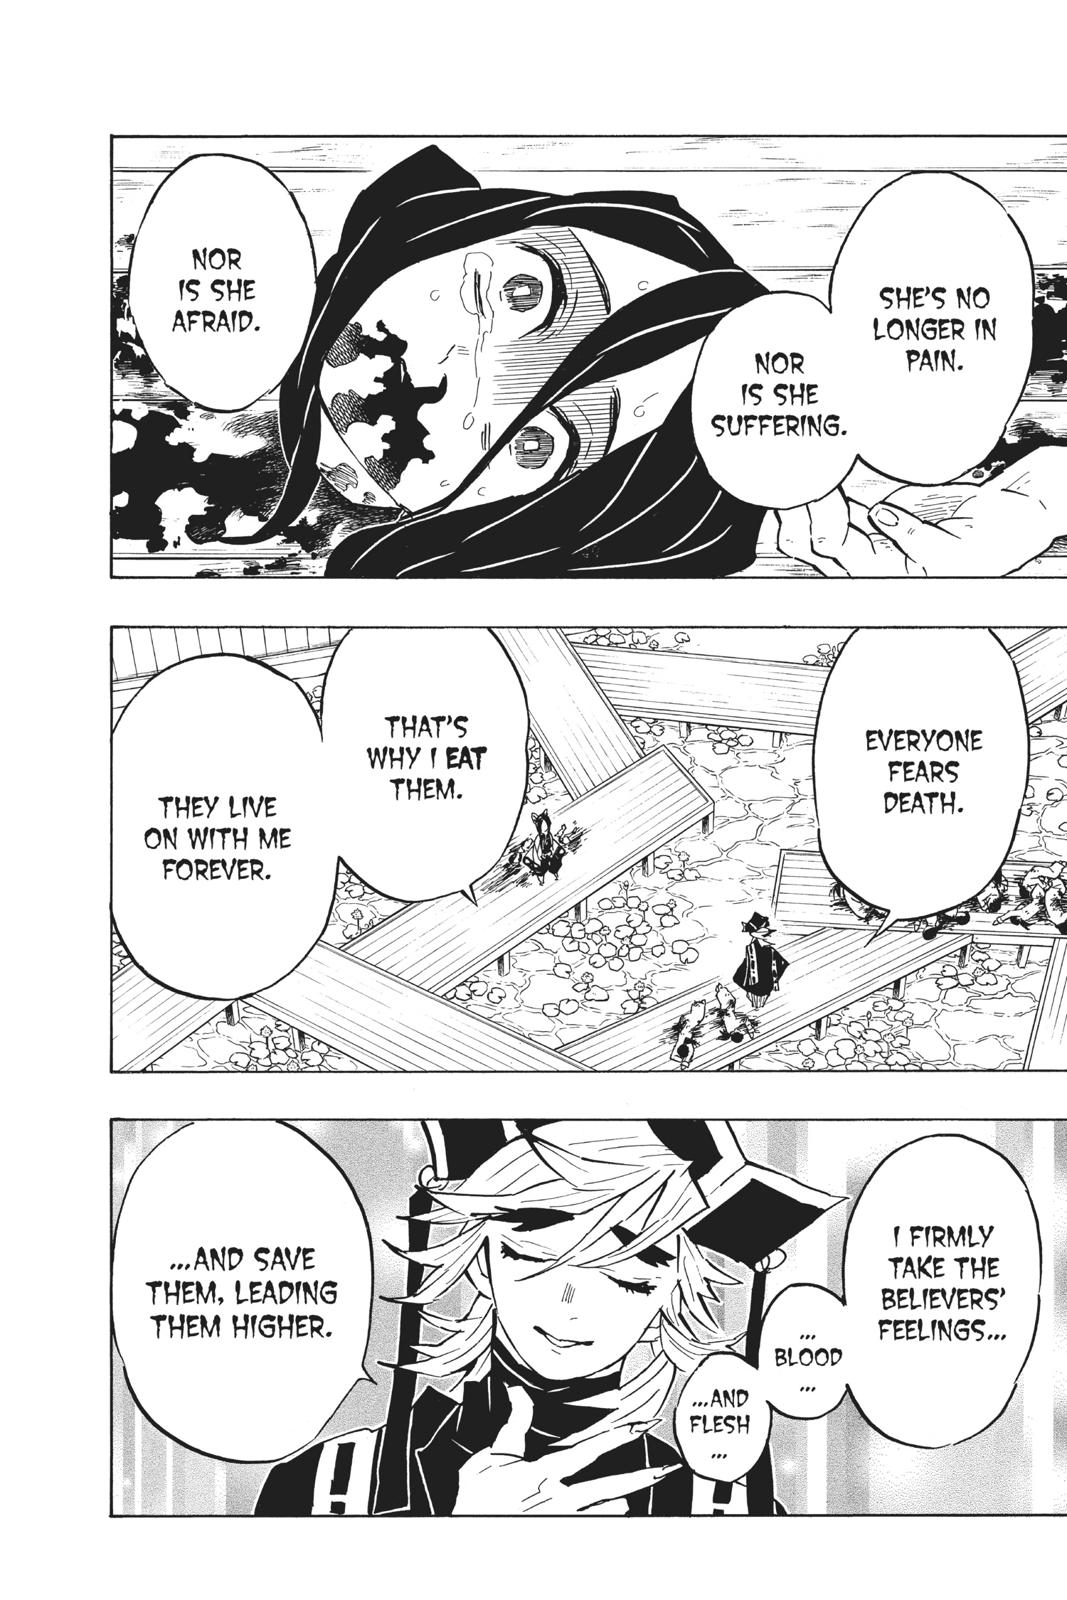 Demon Slayer Manga Manga Chapter - 141 - image 8